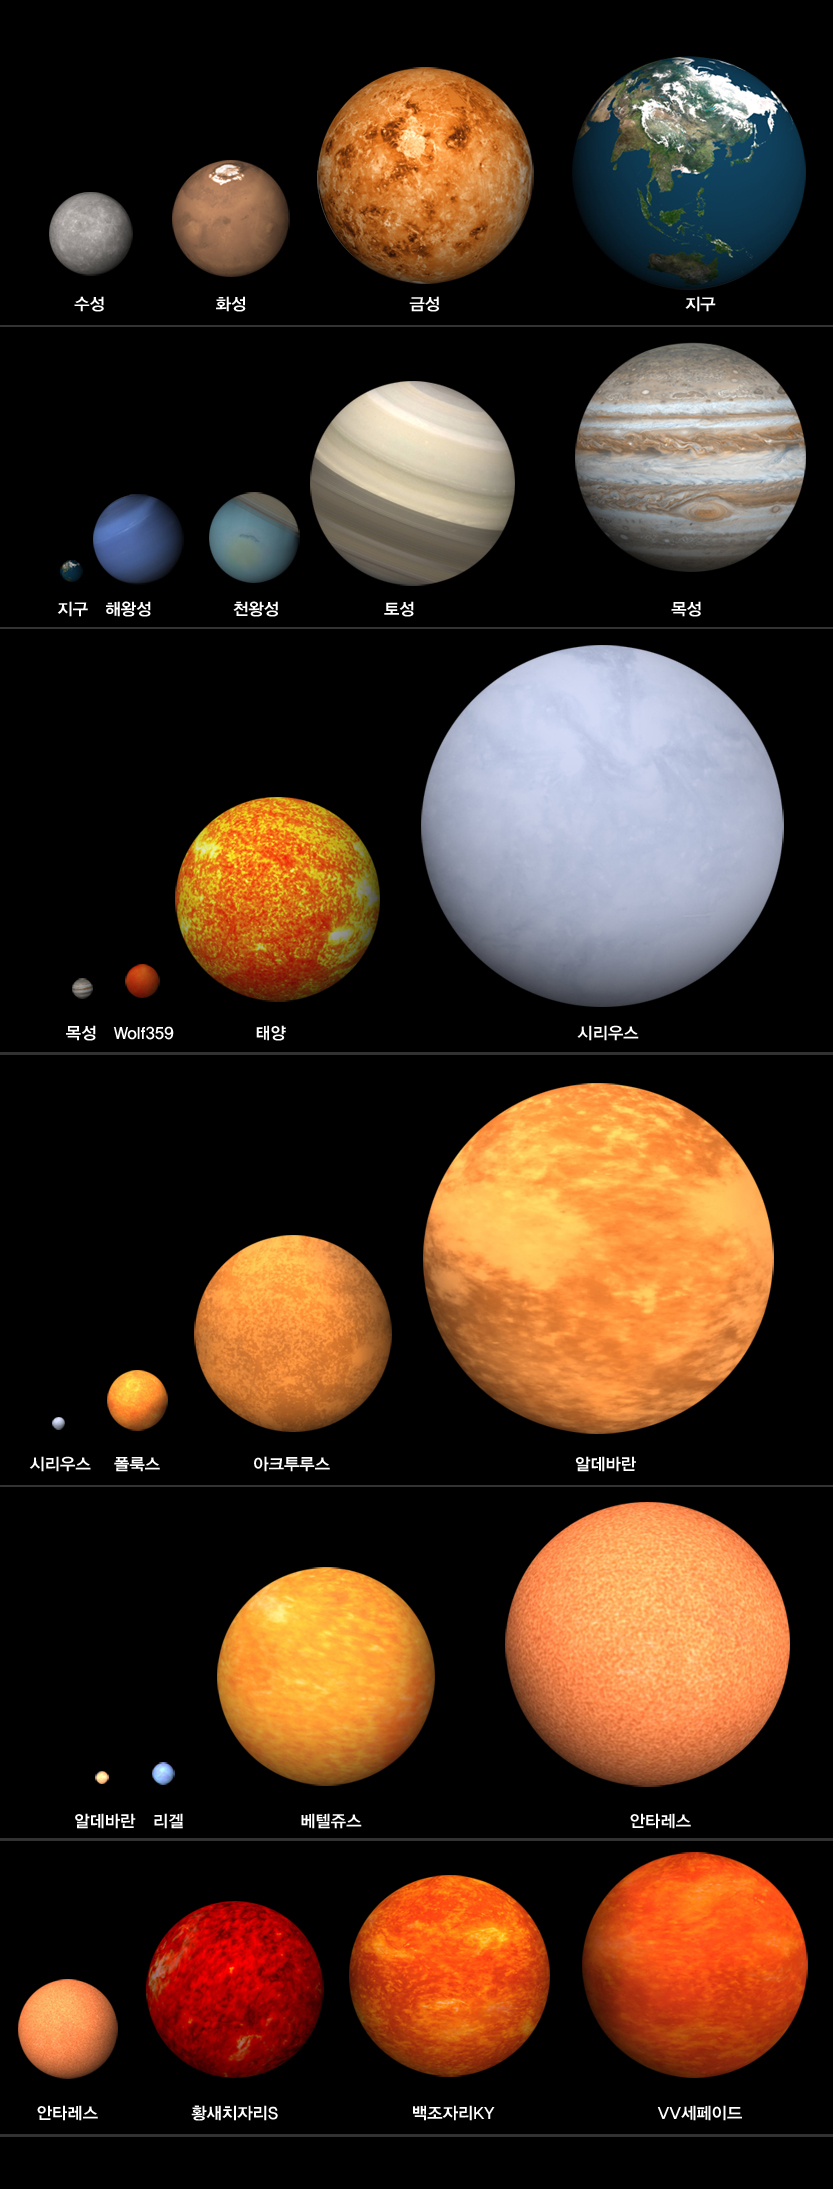 여러 행성과 별들의 크기의 이해를 돕기 위한 화면으로, 크기가 제일 작은 수성부터 화성, 금성, 지구, 해왕성, 천왕성, 토성, 목성, Wolf359, 태양, 시리우스, 폴룩스, 아크투루스, 알데바란, 리겔, 베텔쥬스, 안타레스, 황새치자리S, 백조자리KY, VV세페이드 순으로 크다.